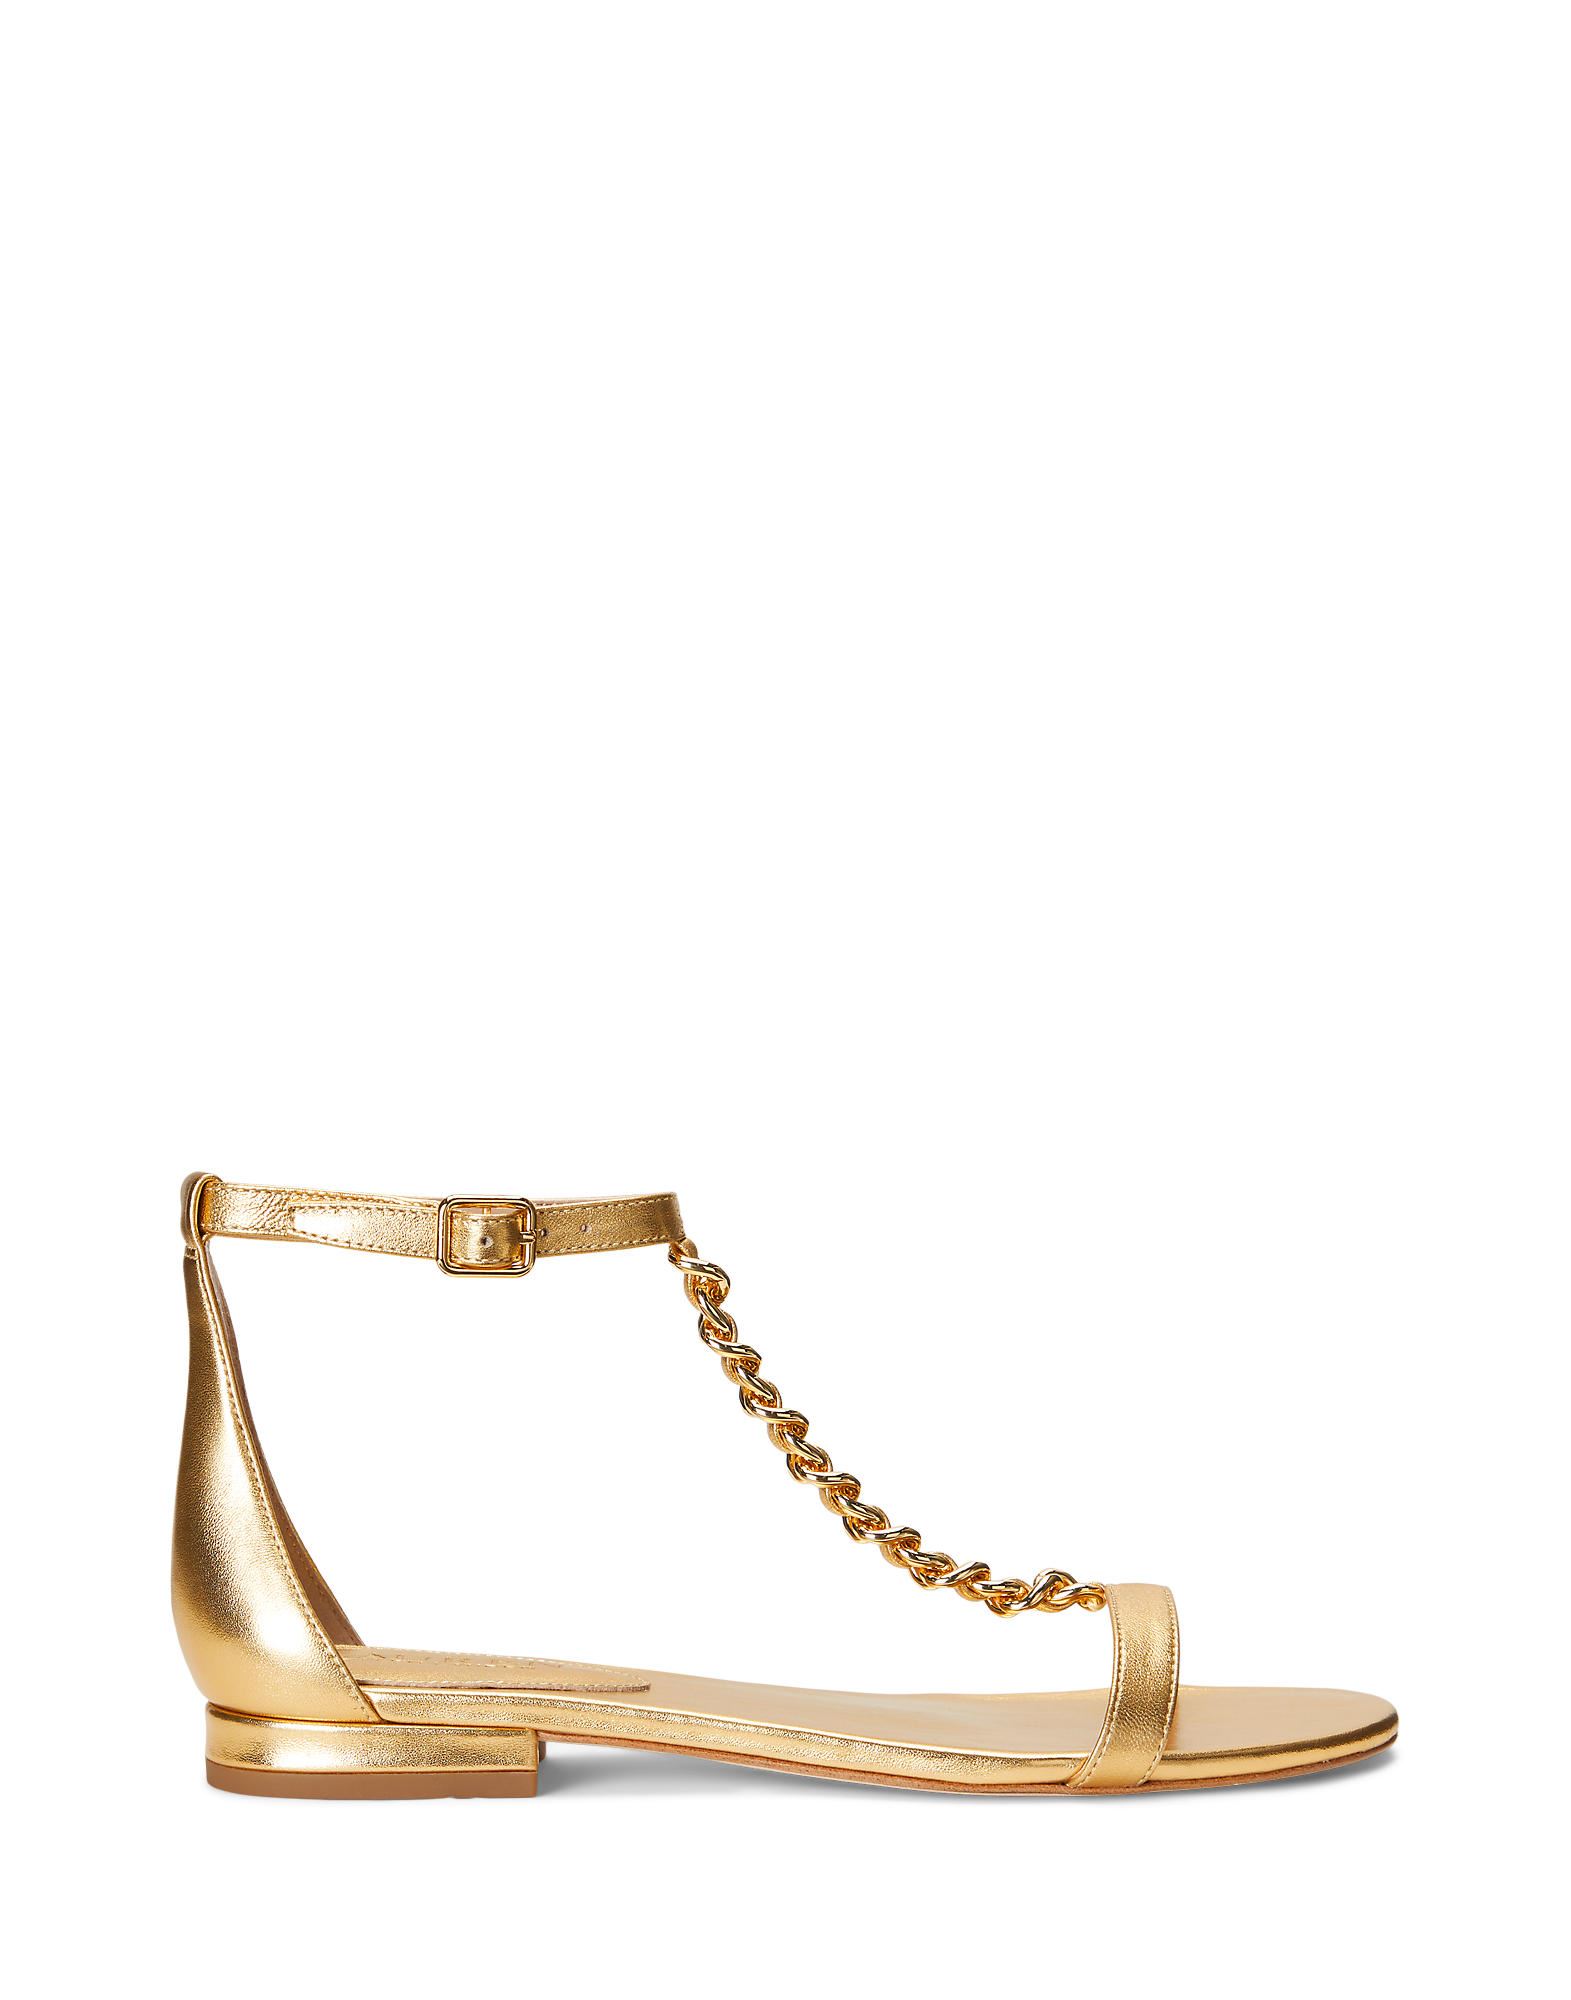 Shop Lauren Ralph Lauren Elise Metallic Nappa Leather Sandal Woman Sandals Gold Size 6.5 Soft Leather